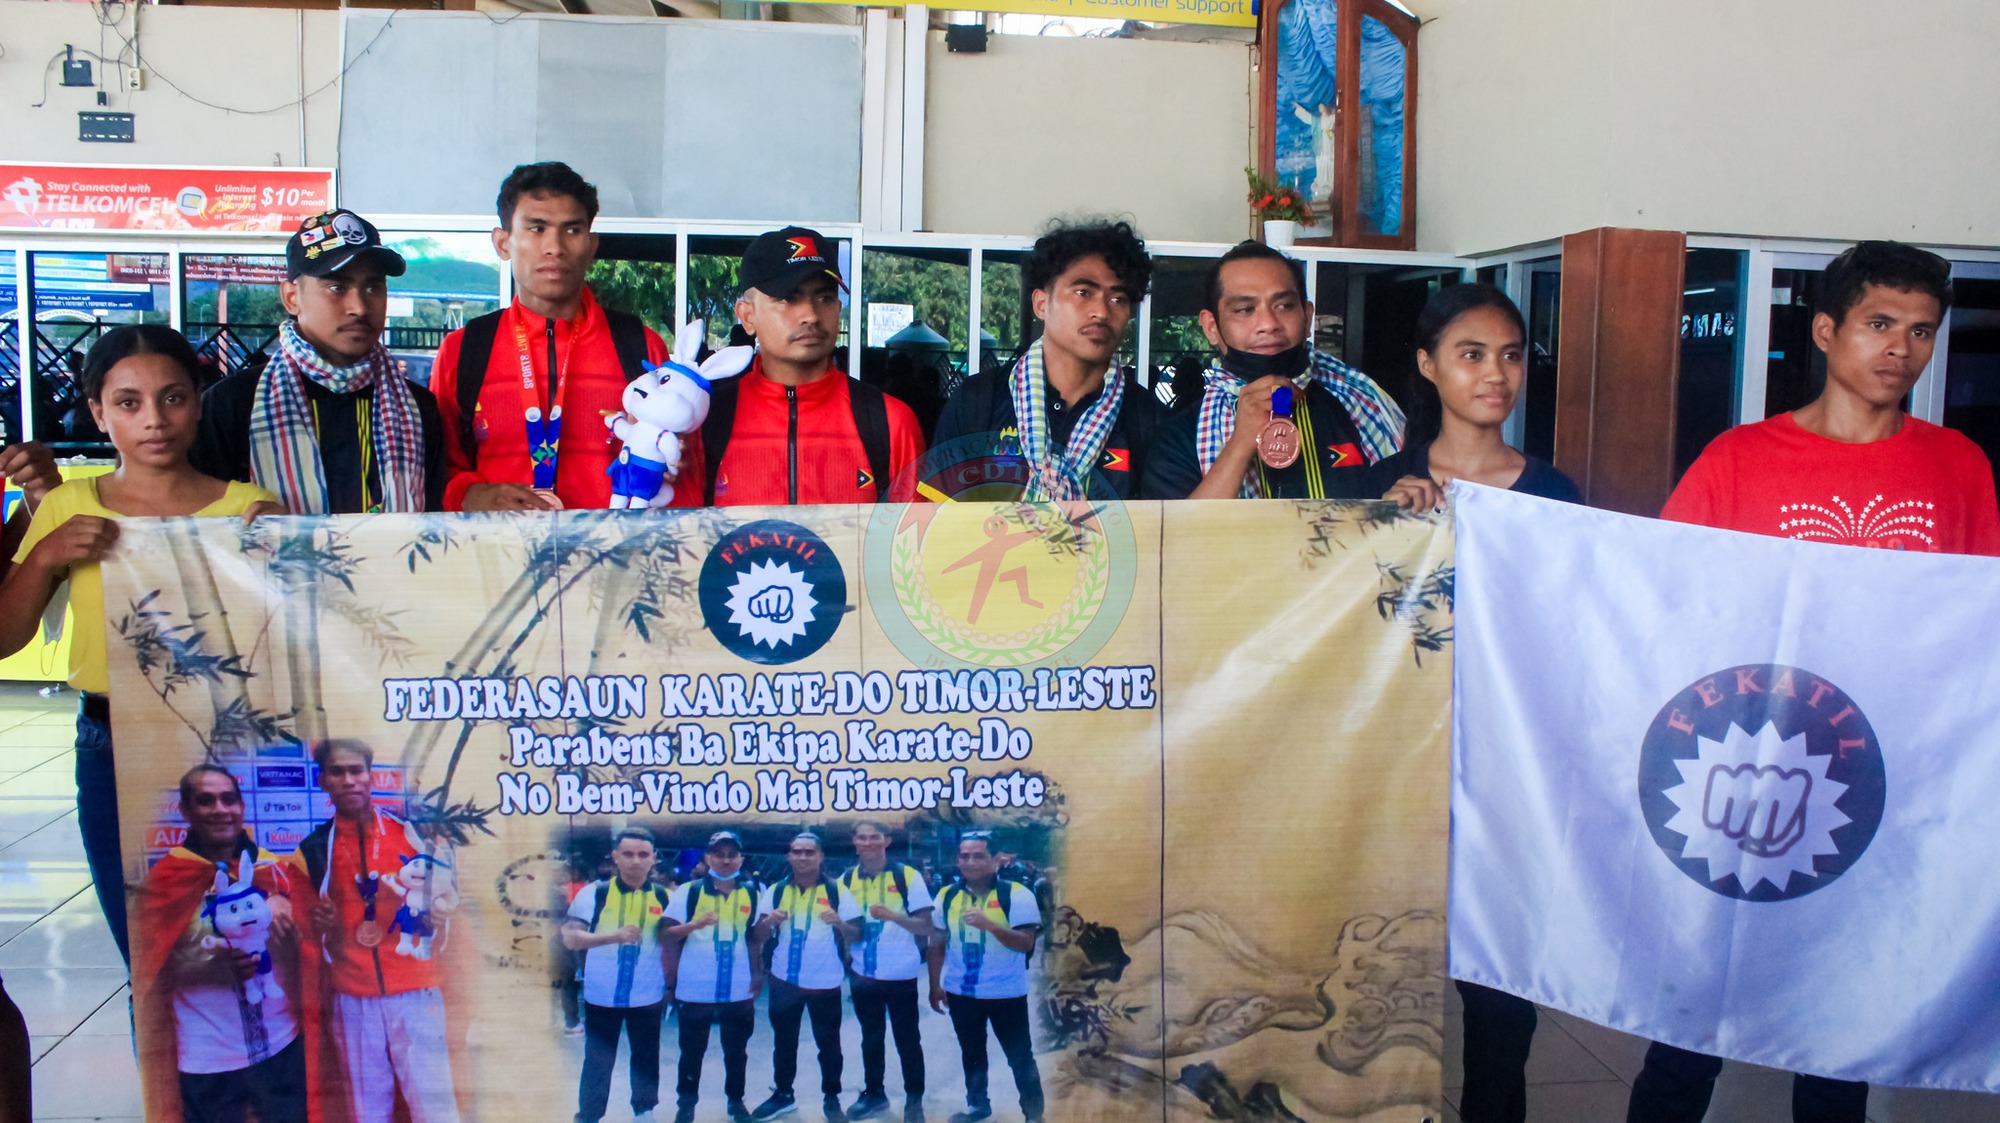 VĐV Timor Leste được chào đón như người hùng sau khi giành HCĐ SEA Games, HLV cảm thán: 'Thật tự hào' - Ảnh 3.